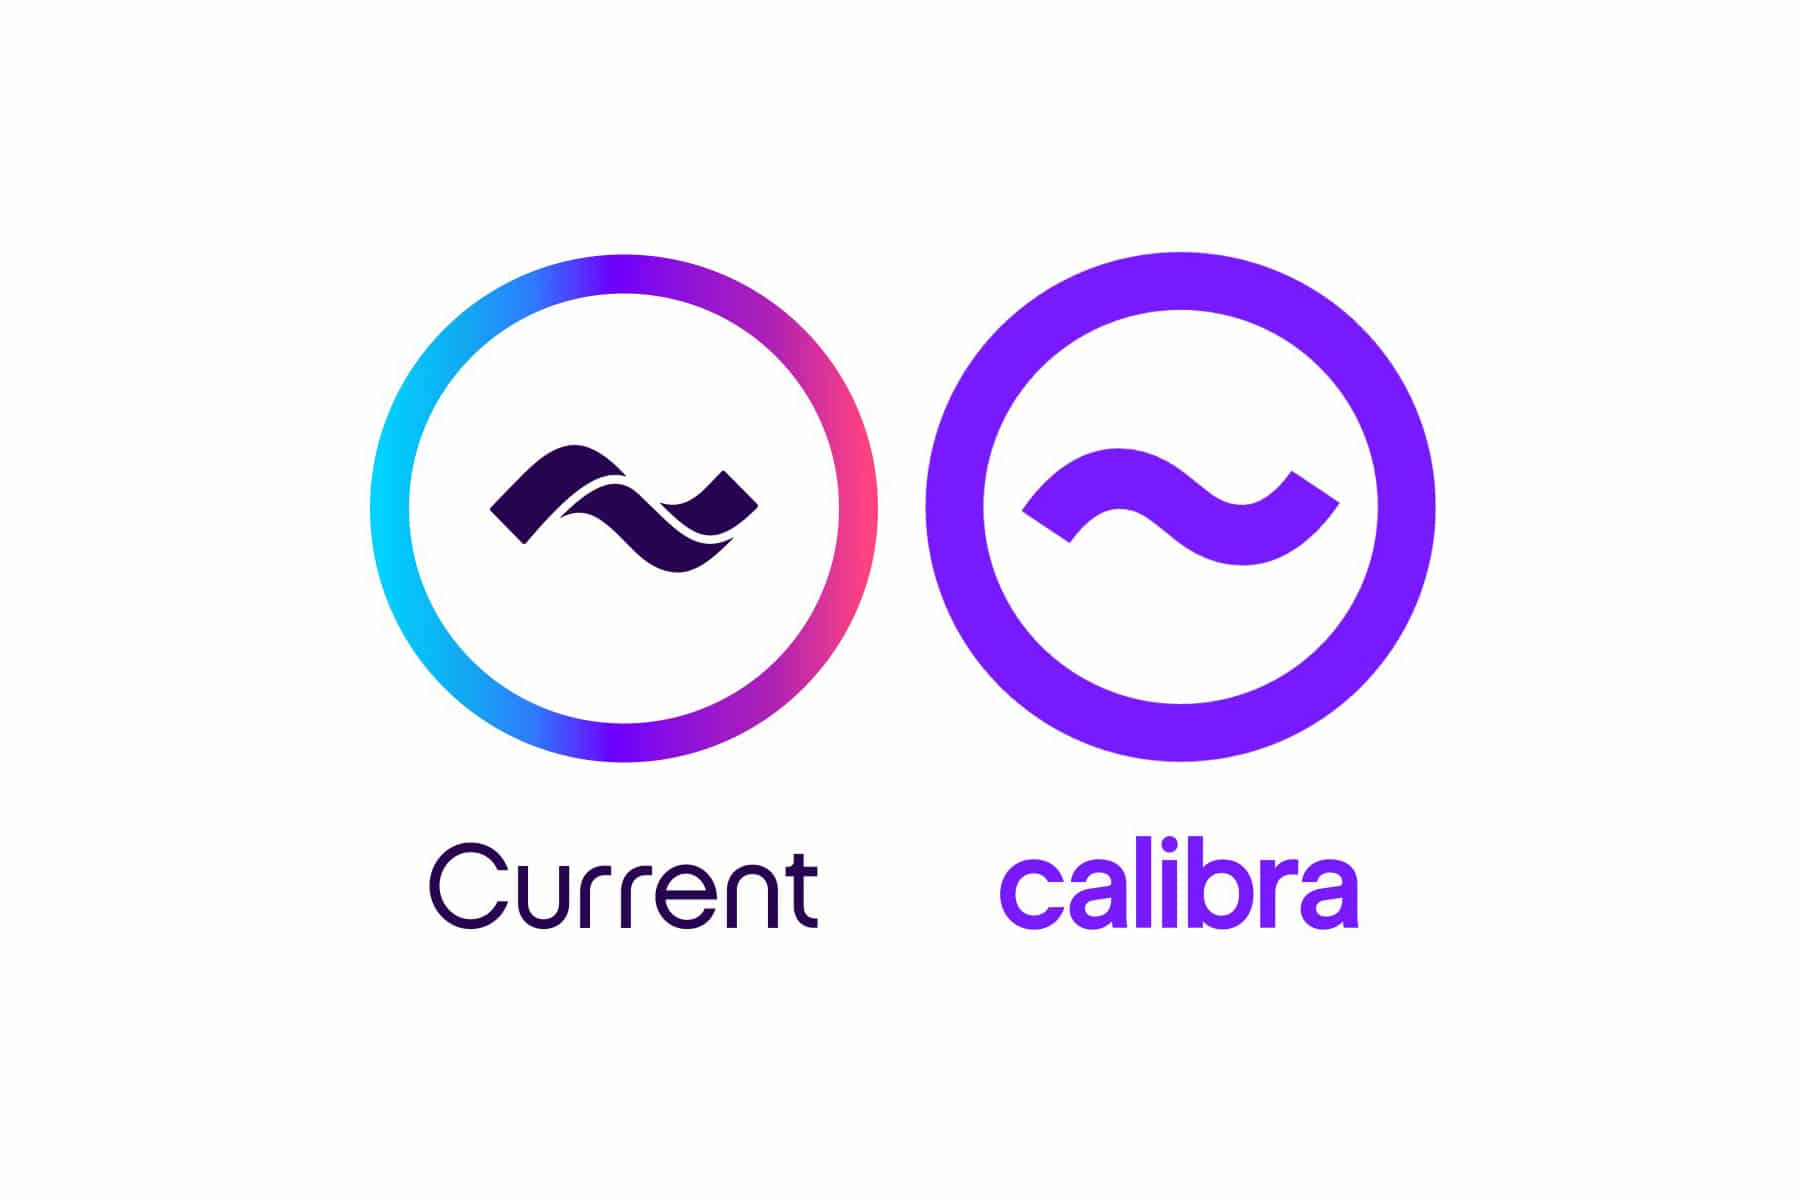 Le logo de Calibra de Facebook, copié sur celui de la banque Current ?